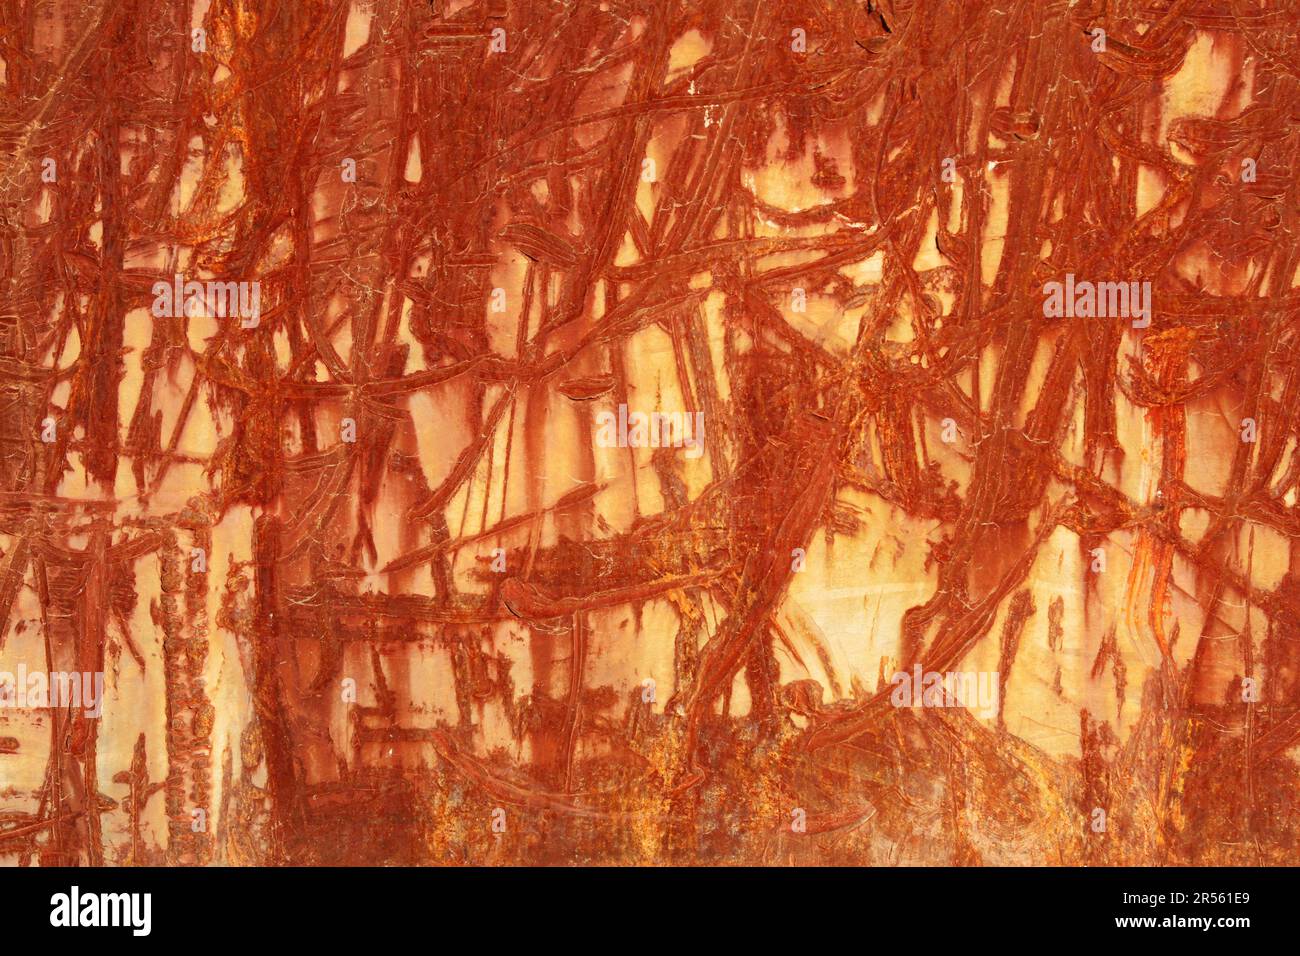 Eine rot-braune Abstraktion von zerkratzten rostigen Linien und Texturen auf einer alten verwitterten Metalloberfläche. Zufällige Aufprallspuren an einer Stahlwand. Sieht Gut Aus Stockfoto